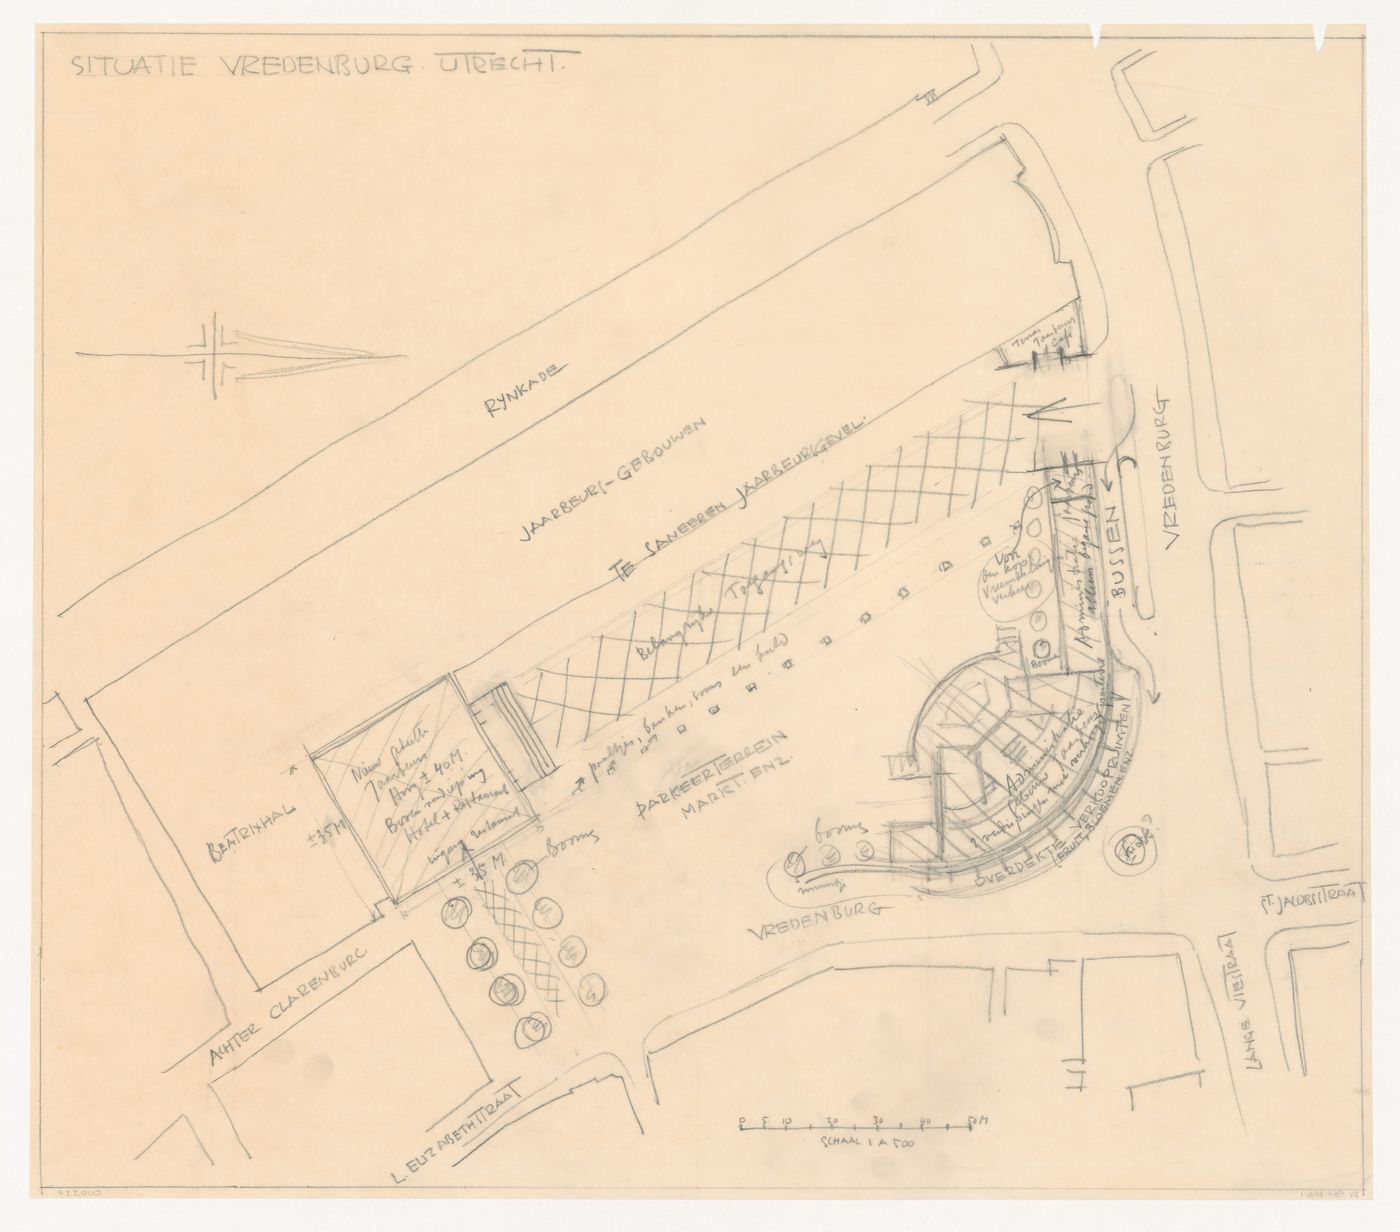 Sketch site plan for Vredenburg mixed-use development, Utrecht, Netherlands